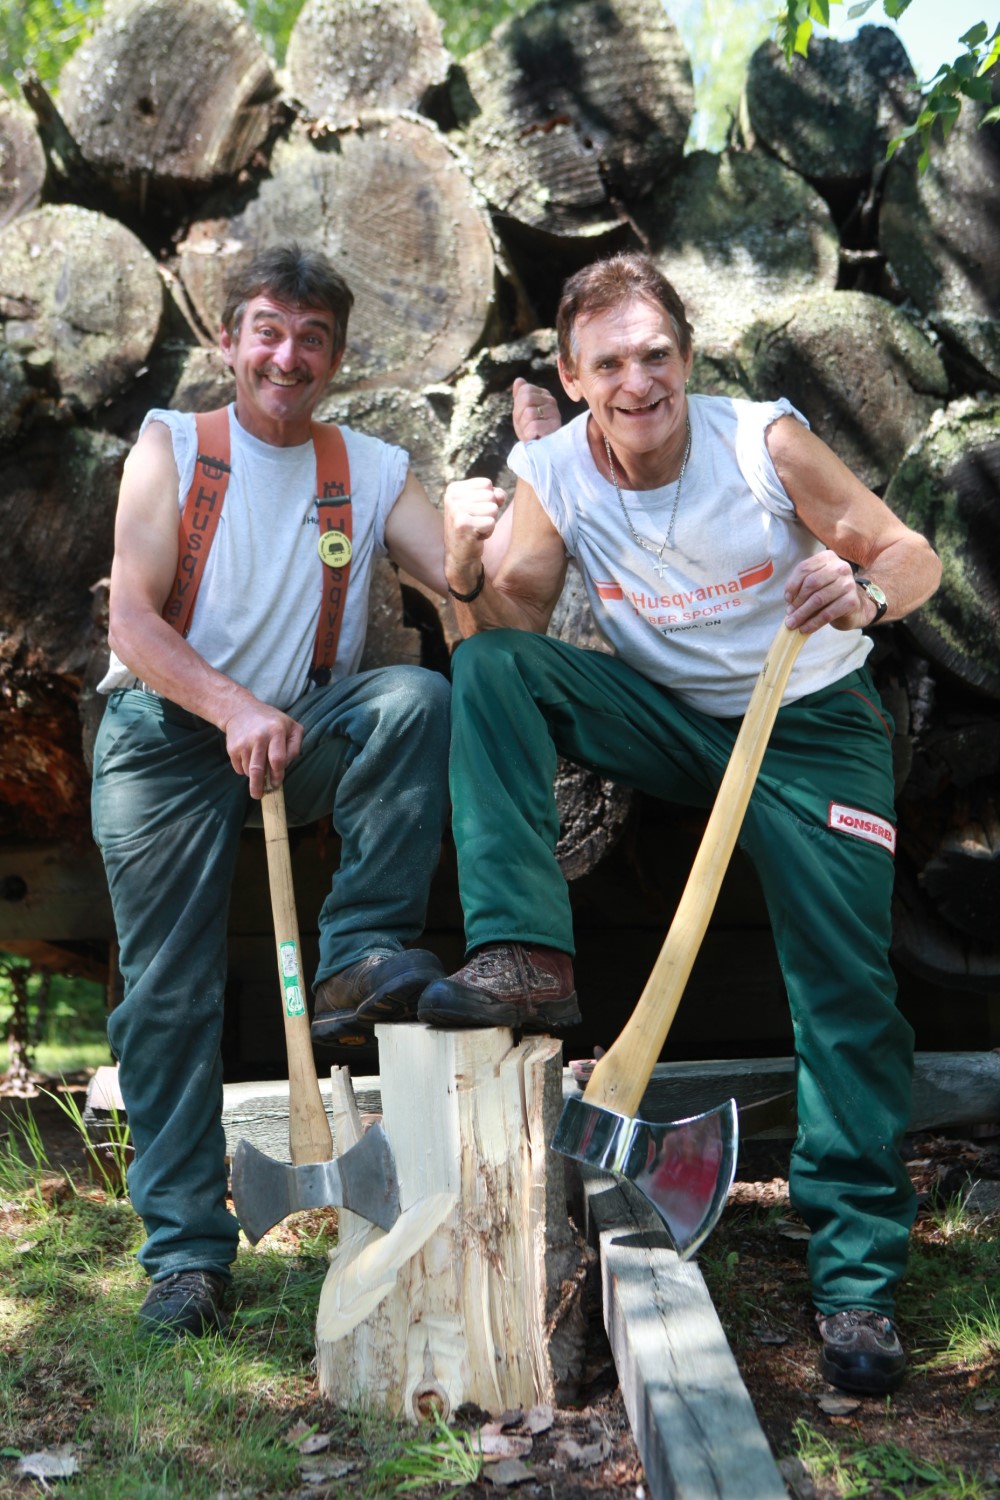 Deux personnes portant des bretelles rouges et un pantalon vert, chacune ayant une jambe levée sur un morceau de bois coupé. Elles sont toutes deux appuyées sur le manche d'une hache.